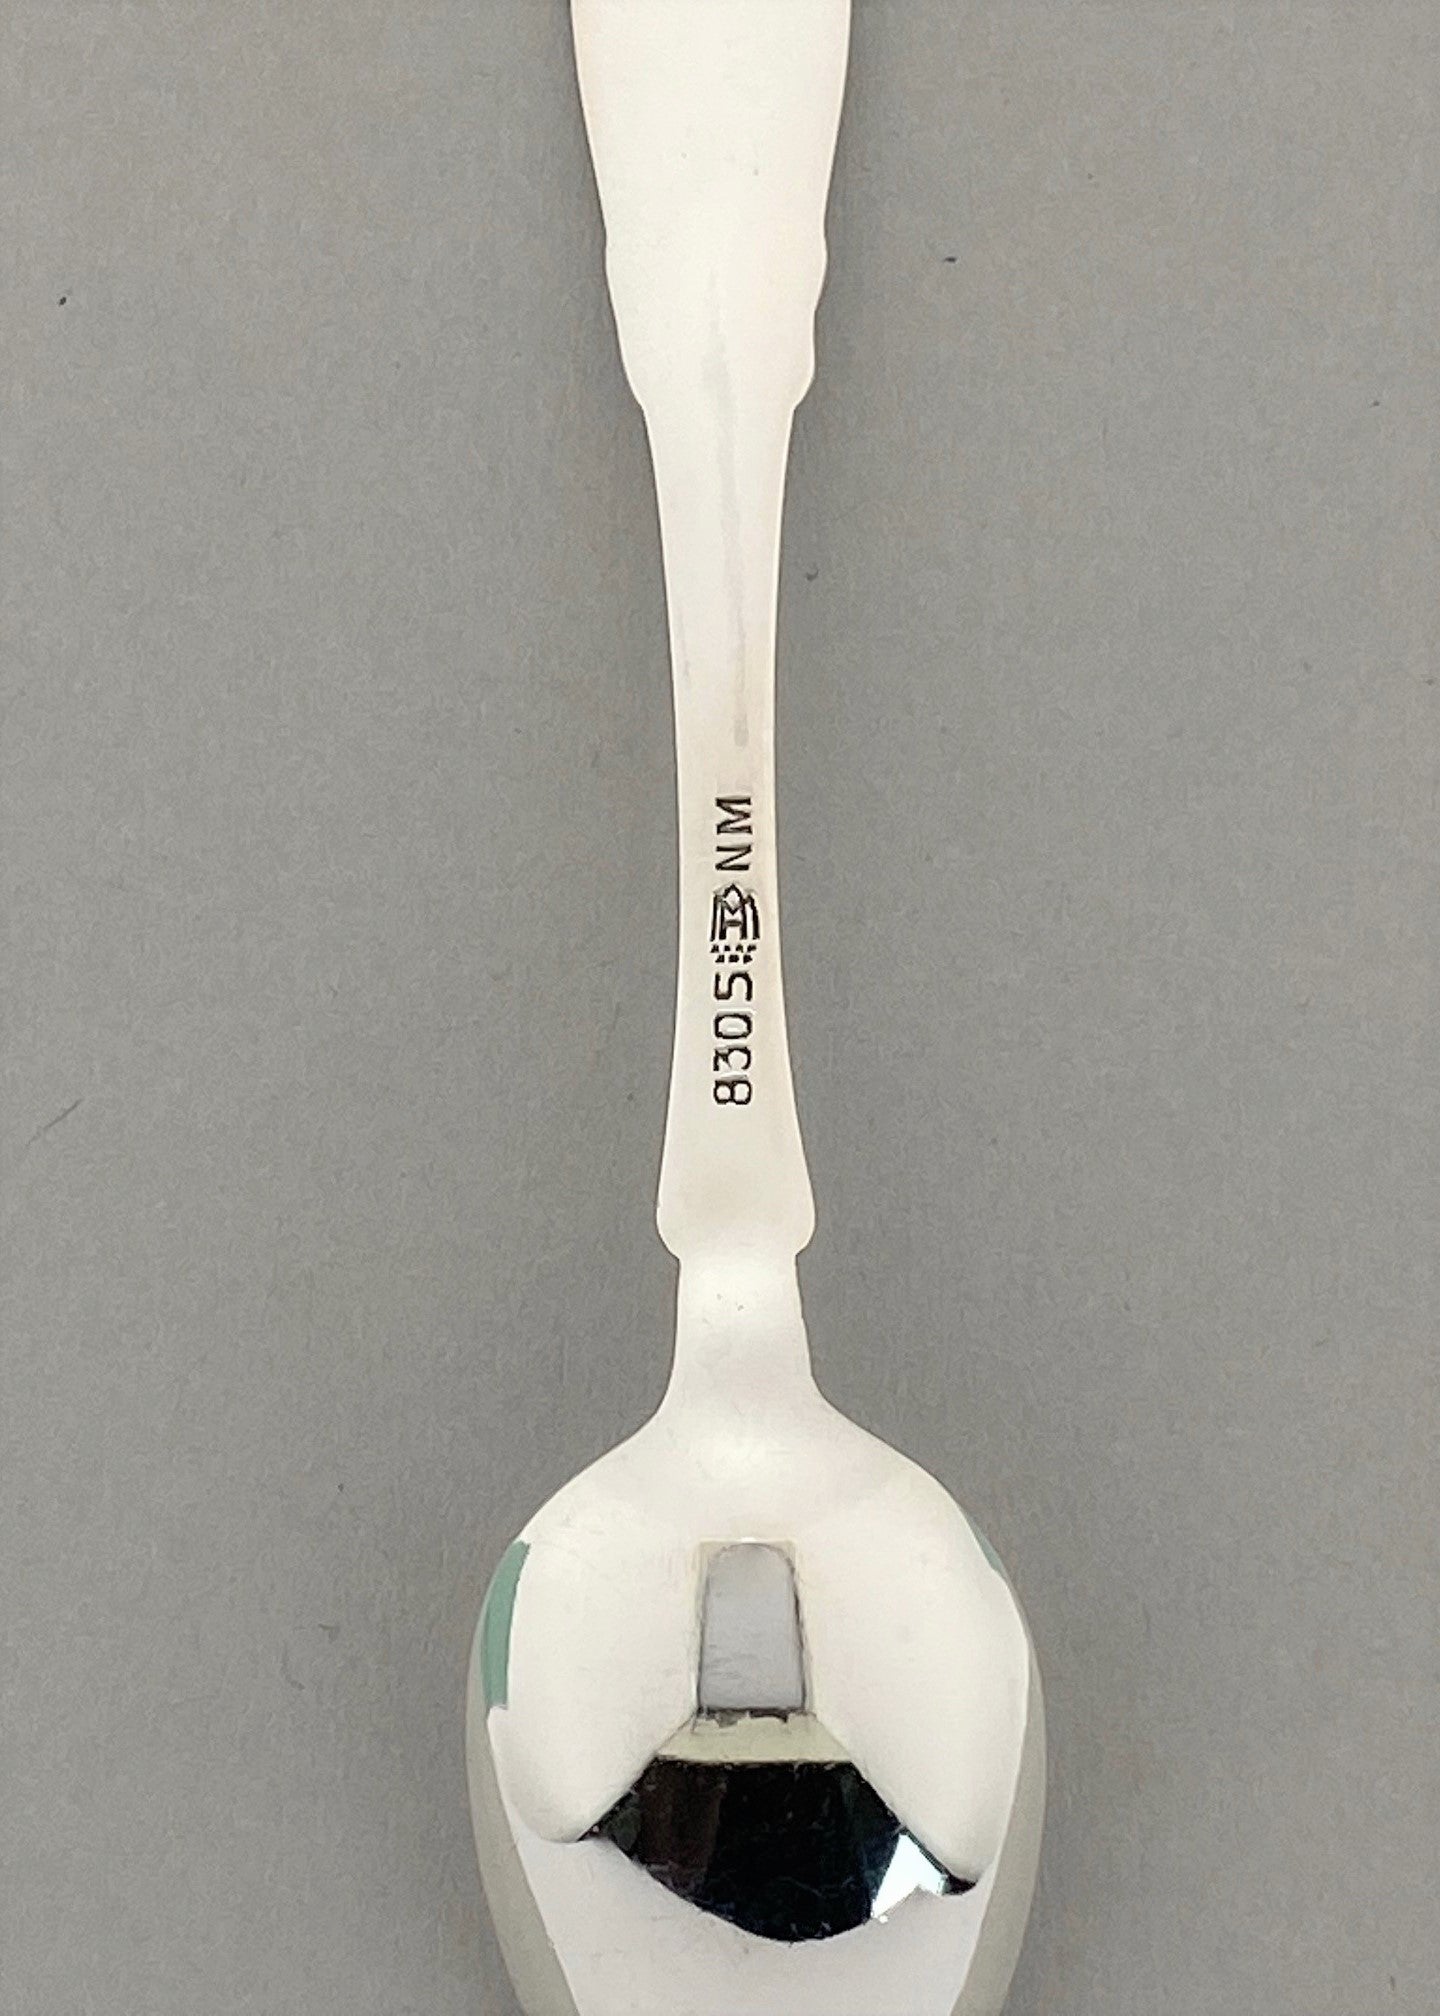 Vintage Hardanger mocca spoon